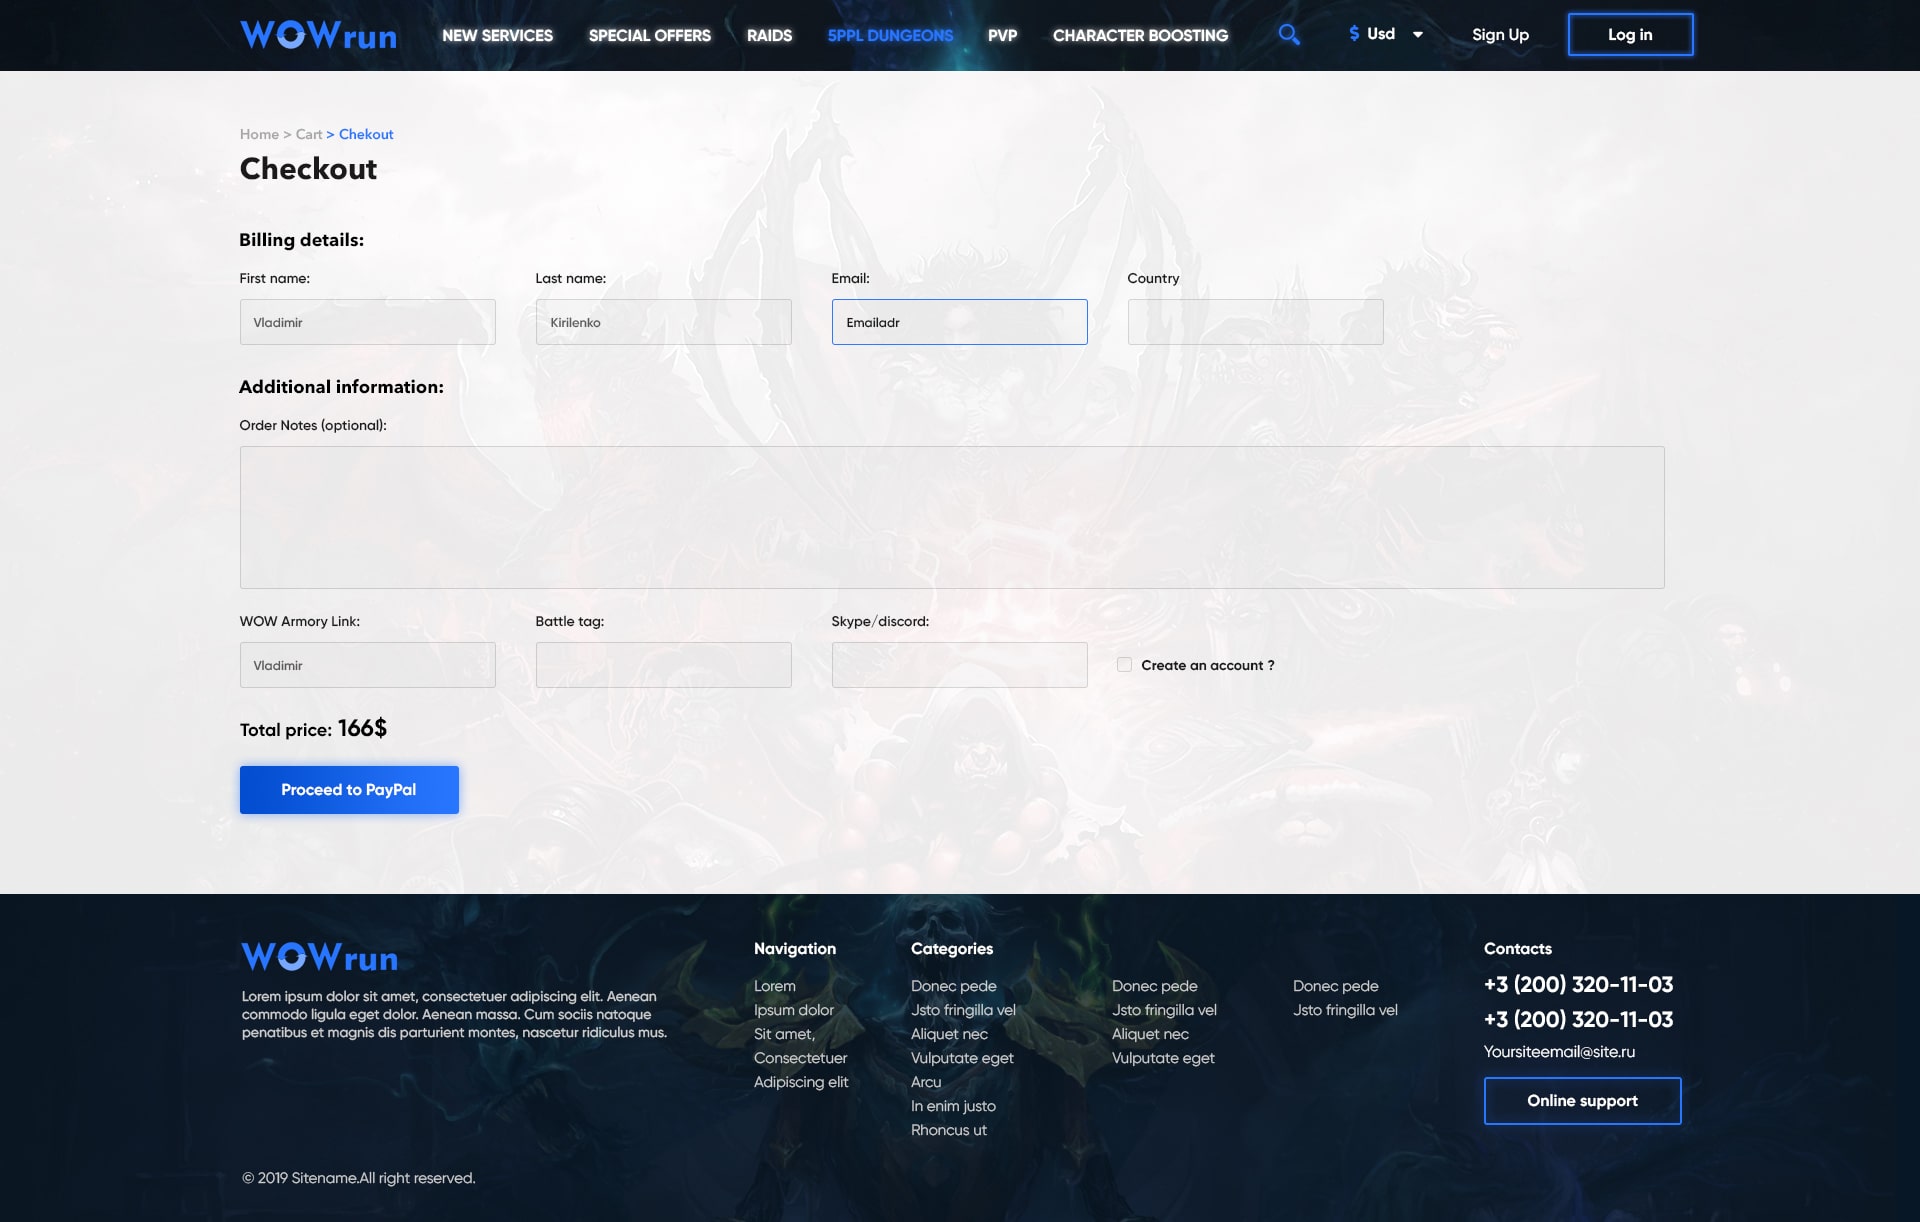 Интернет-магазин по прокачке в игре World of Warcraft